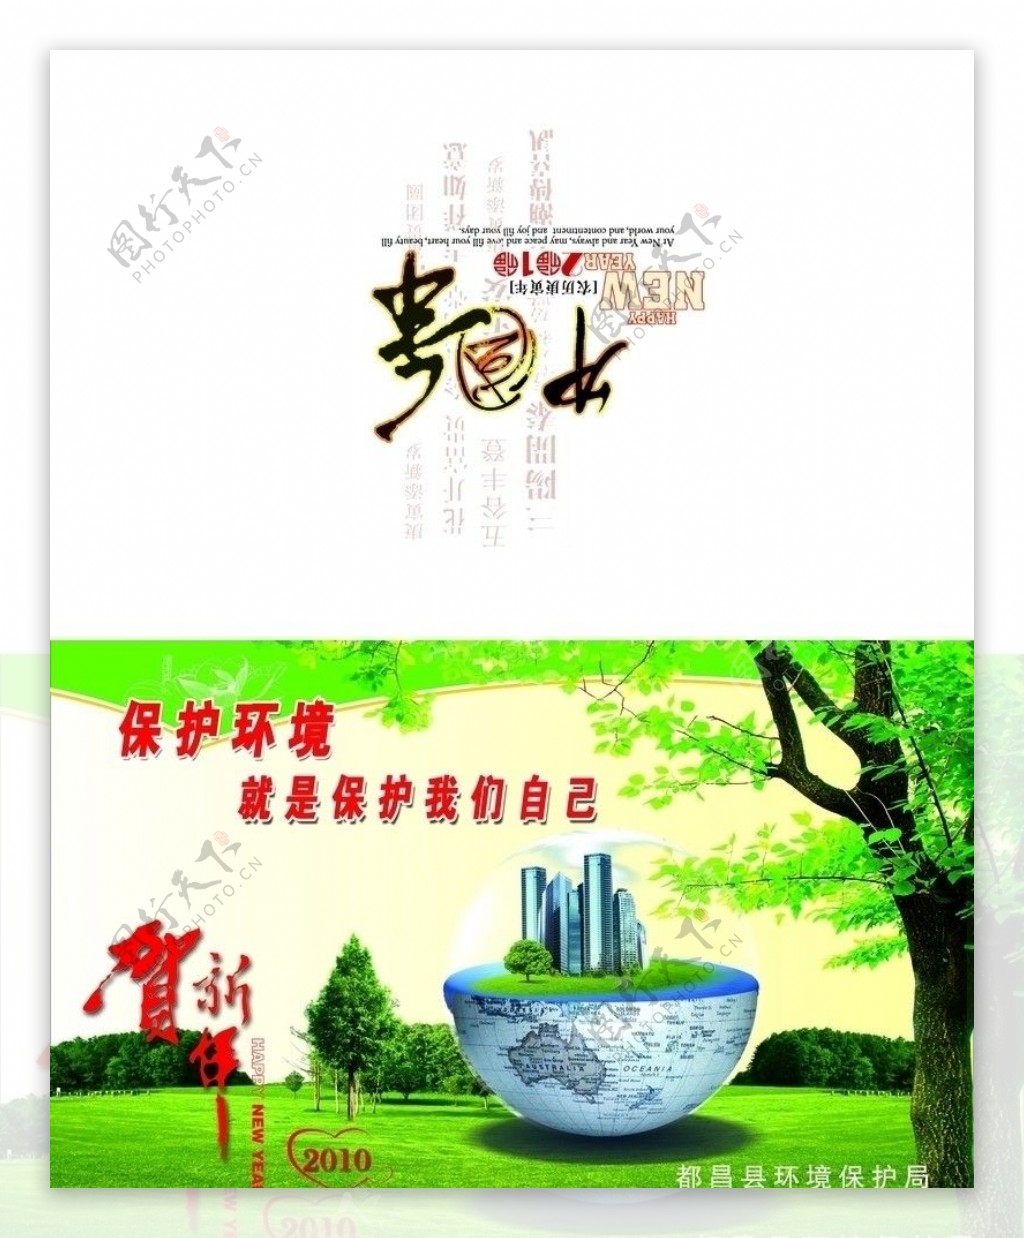 都昌县环保局贺卡正面图片